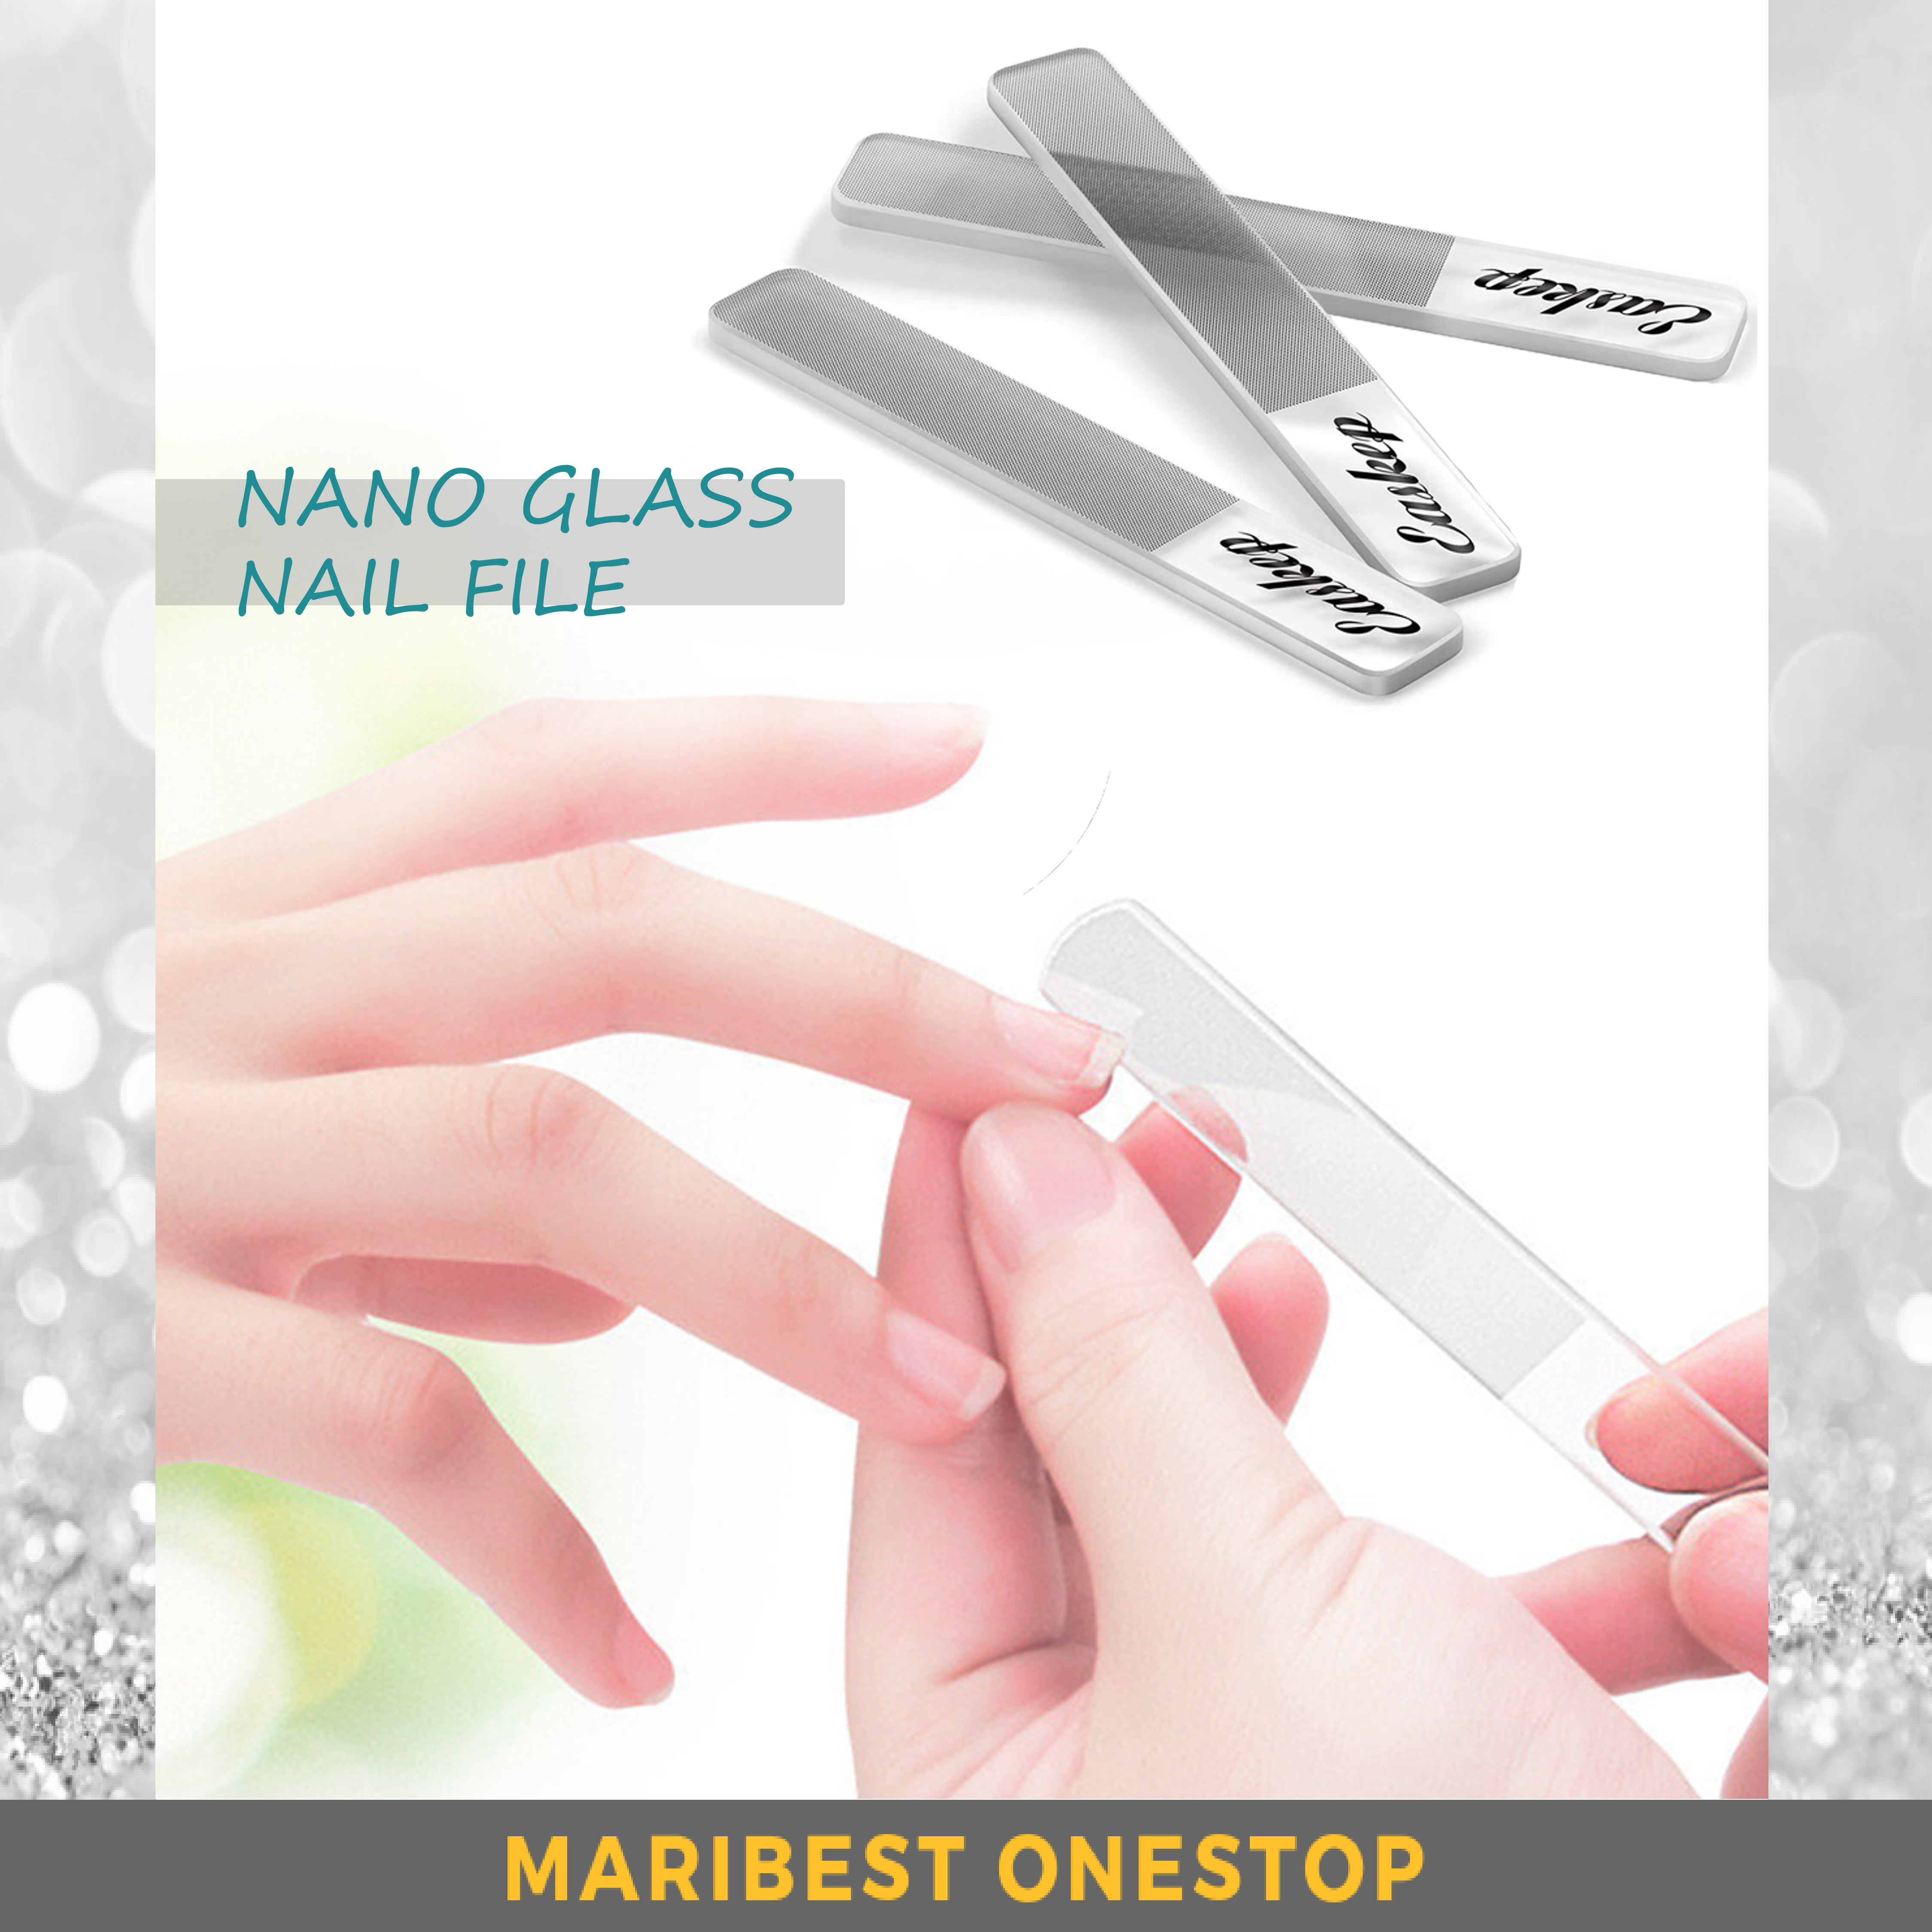 NANO GLASS NAIL FILE Nail Shiner Professional Crystal Manicure Tools Kit for Natural Nails